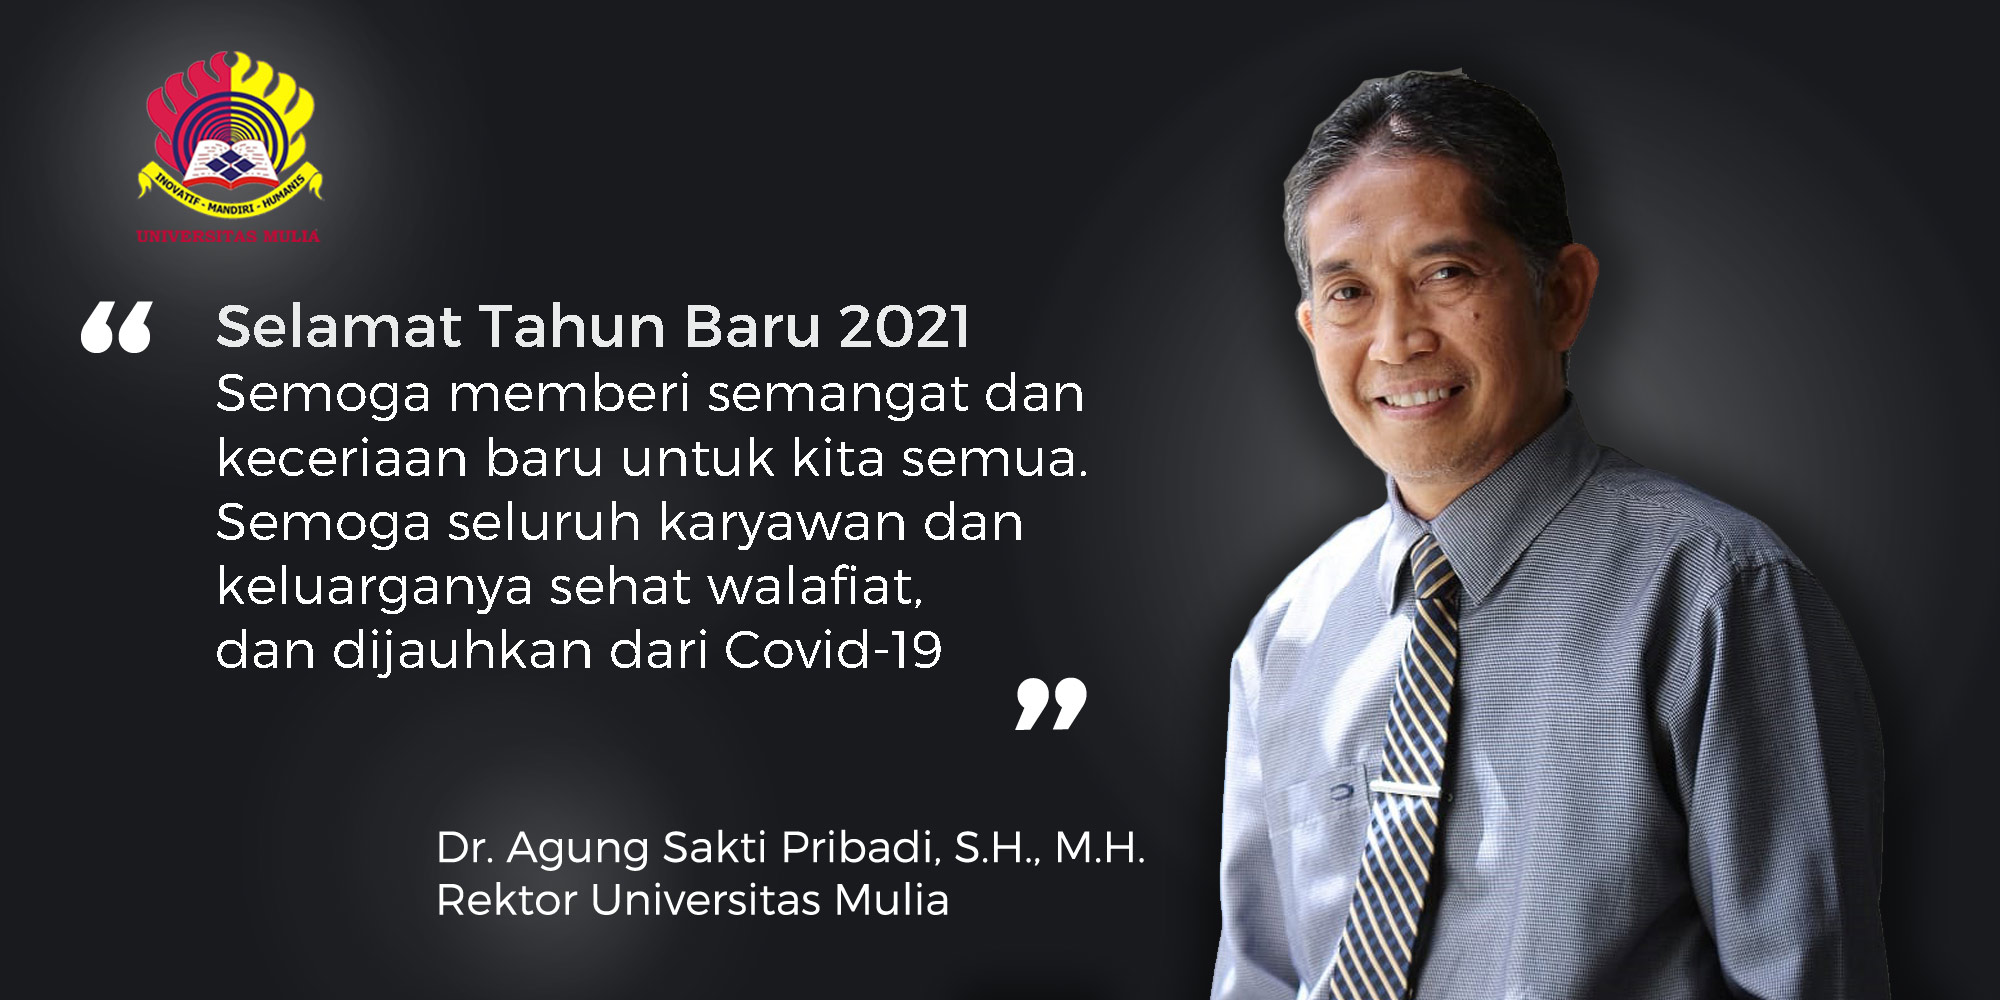 Ucapan Selamat Tahun Baru 2021 Rektor Universitas Mulia, Dr. Agung Sakti Pribadi, S.H., M.H.